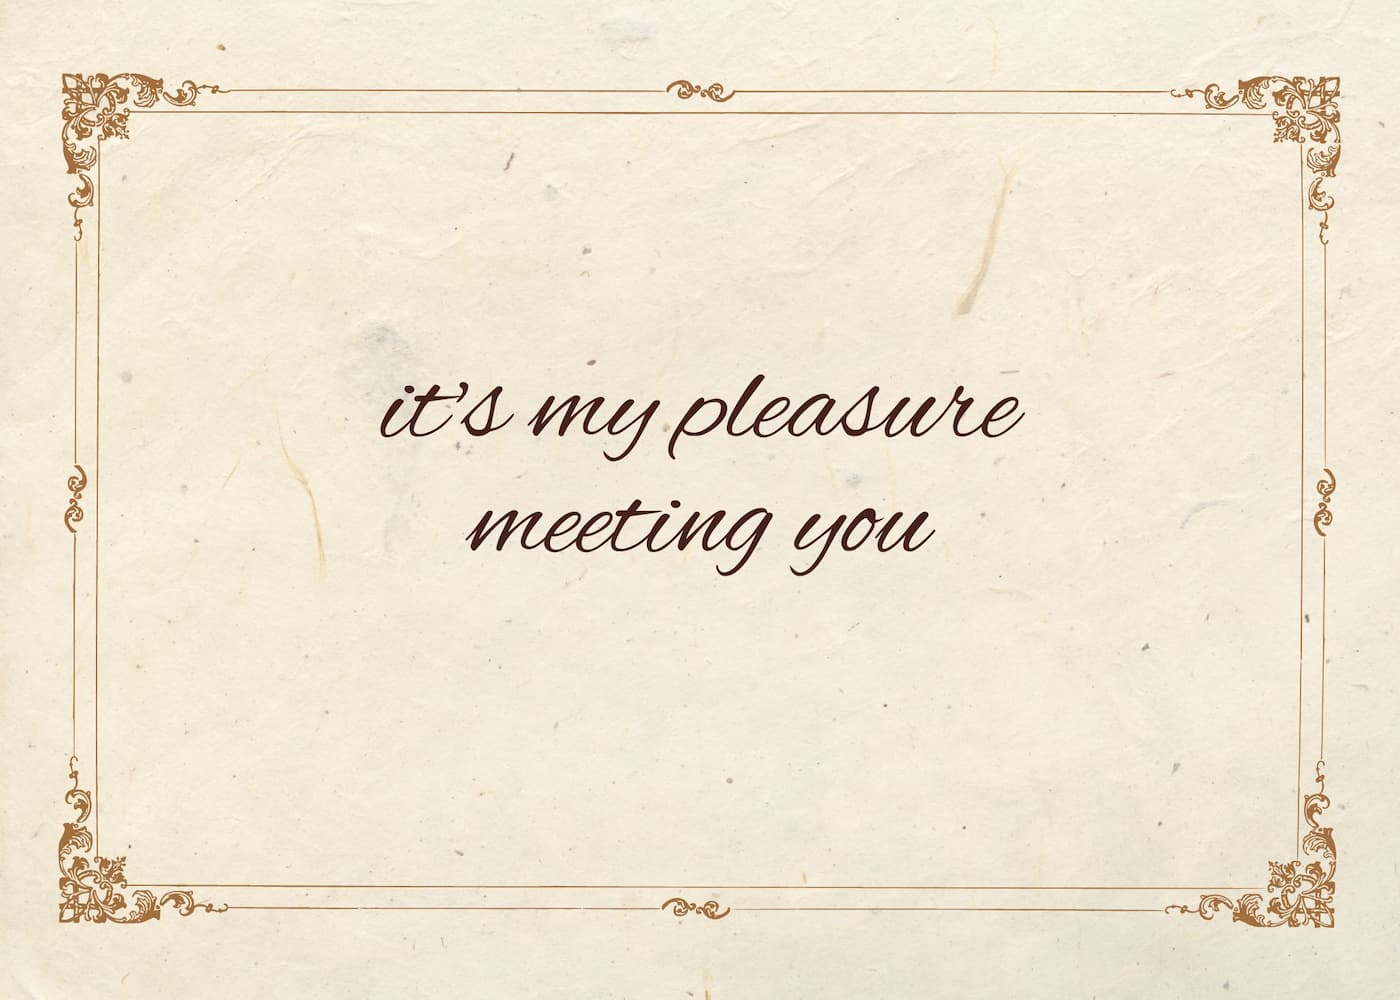 معنی جمله it's my pleasure meeting you چیست؟.jpg